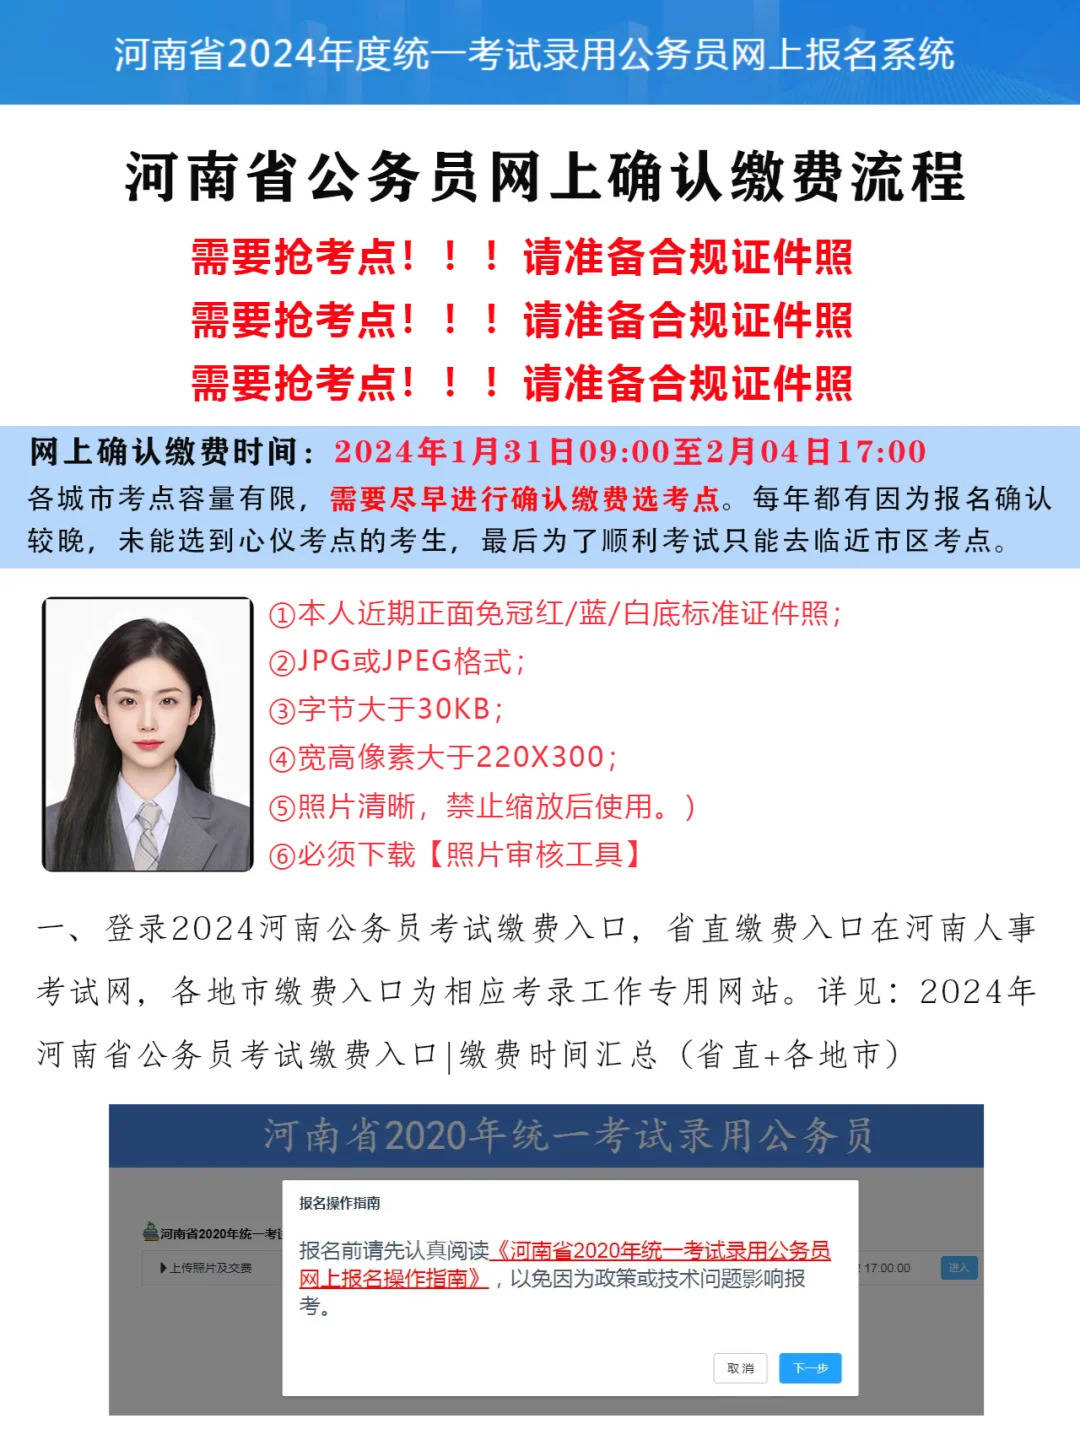 报名网址:河南人事考试网78面试时间:面试时间拟安排在2024年5月